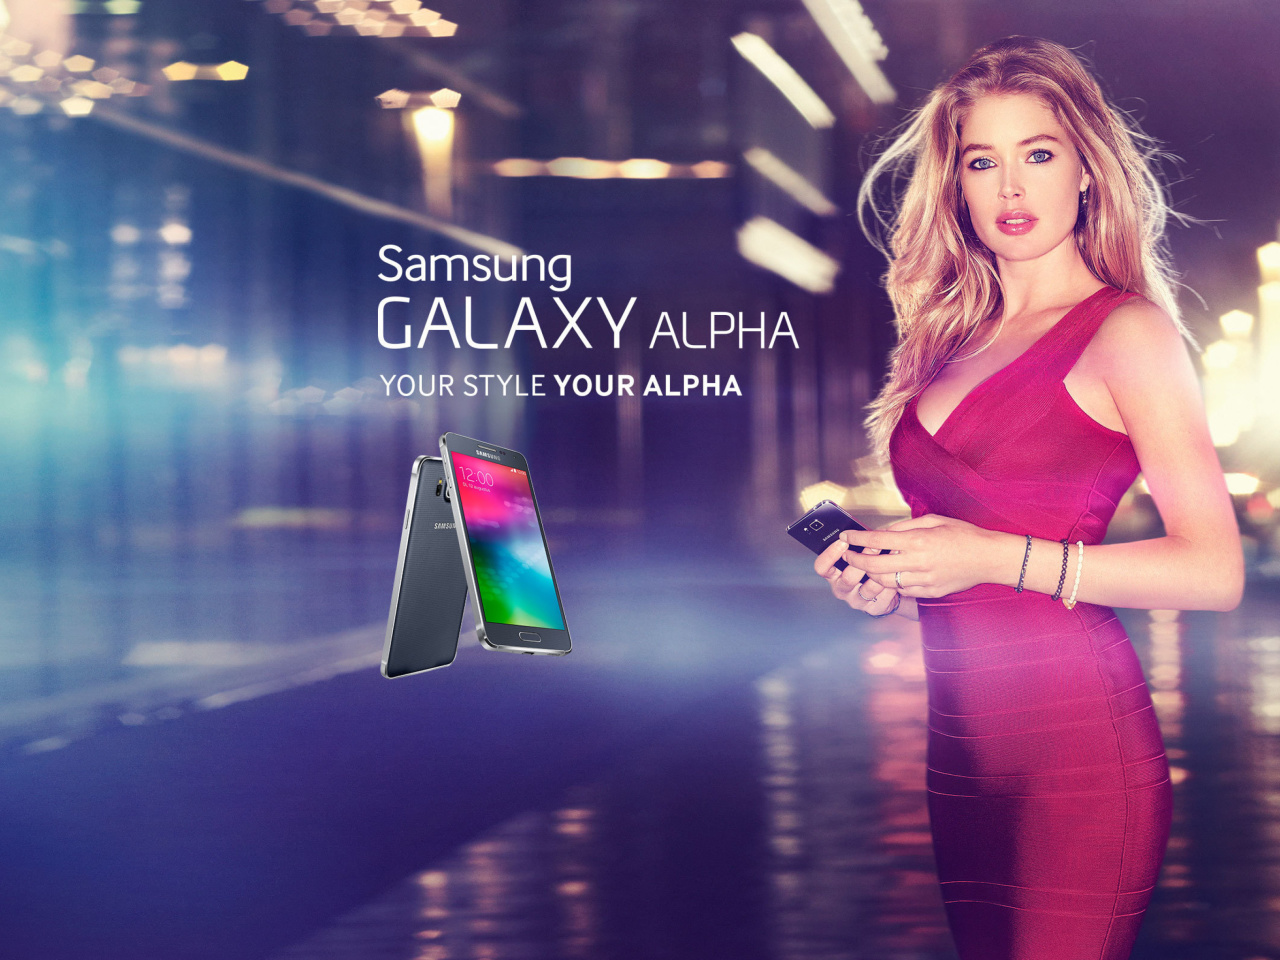 Samsung Galaxy Alpha Advertisement with Doutzen Kroes screenshot #1 1280x960